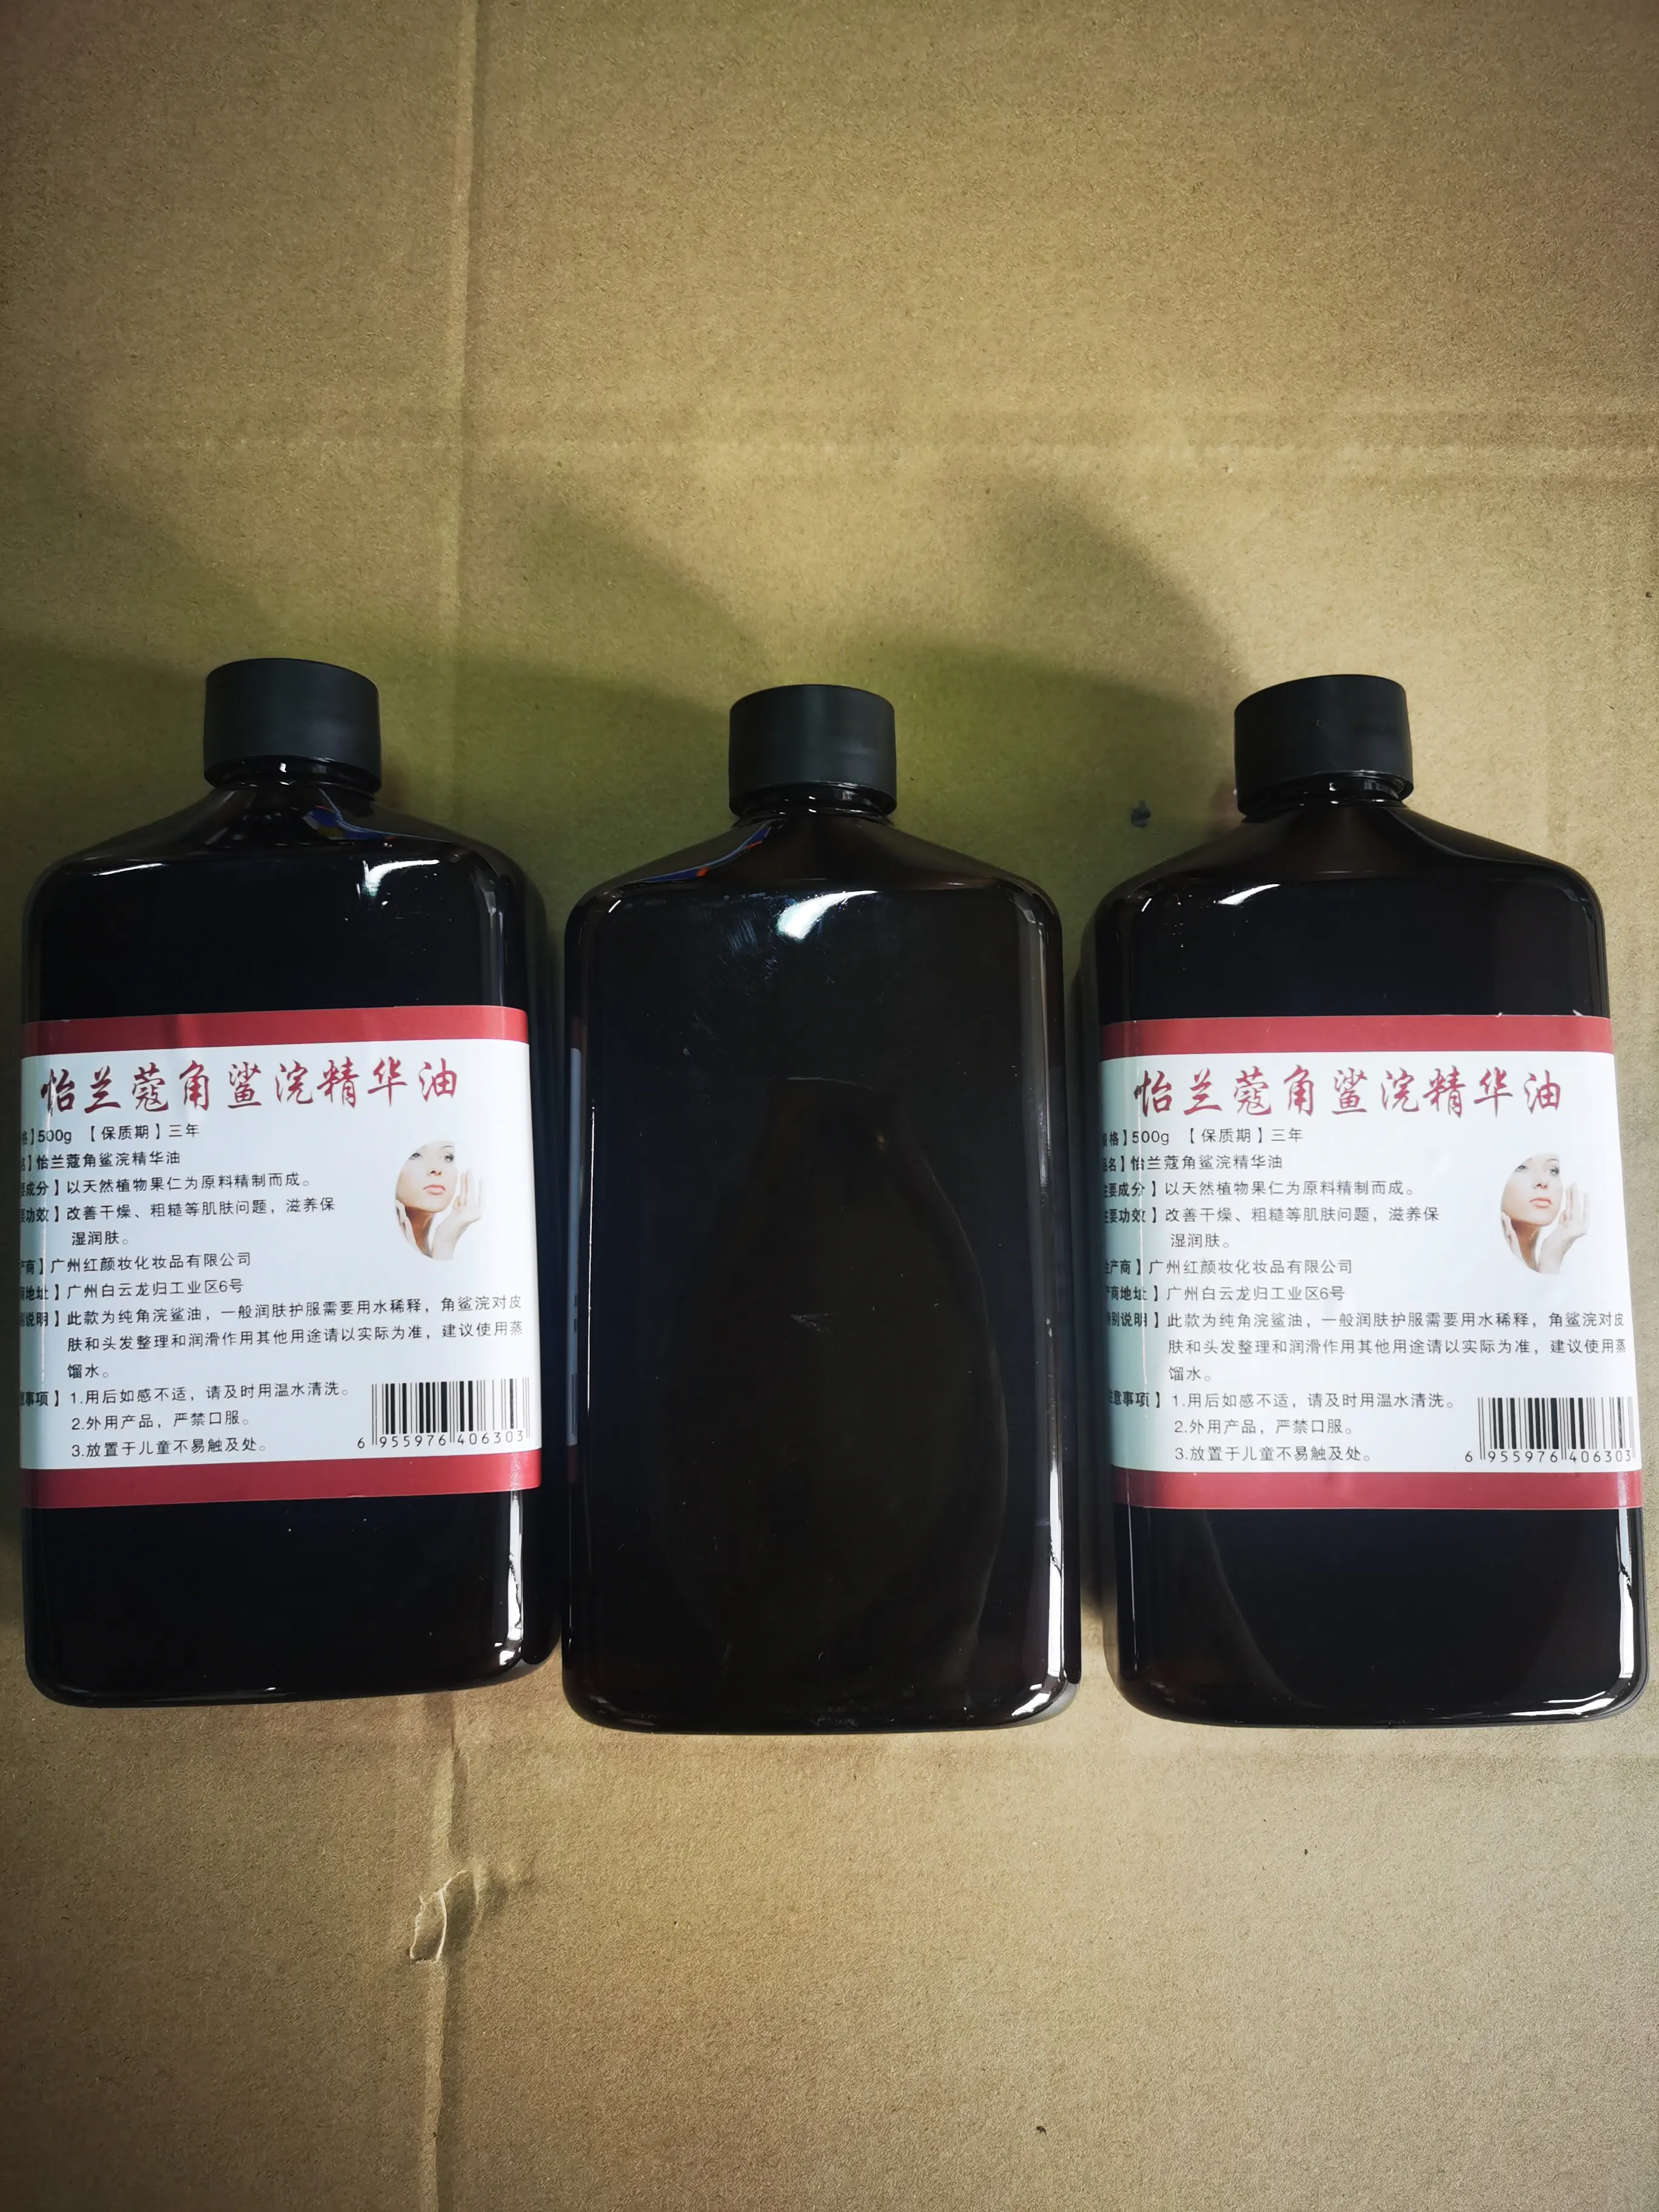 3 jours de livraison rapide 1 4-Butendiol Clear Liquid 99.7% Pureté CAS 110 Liquide Sydney Melbourne Entrepôt Stock